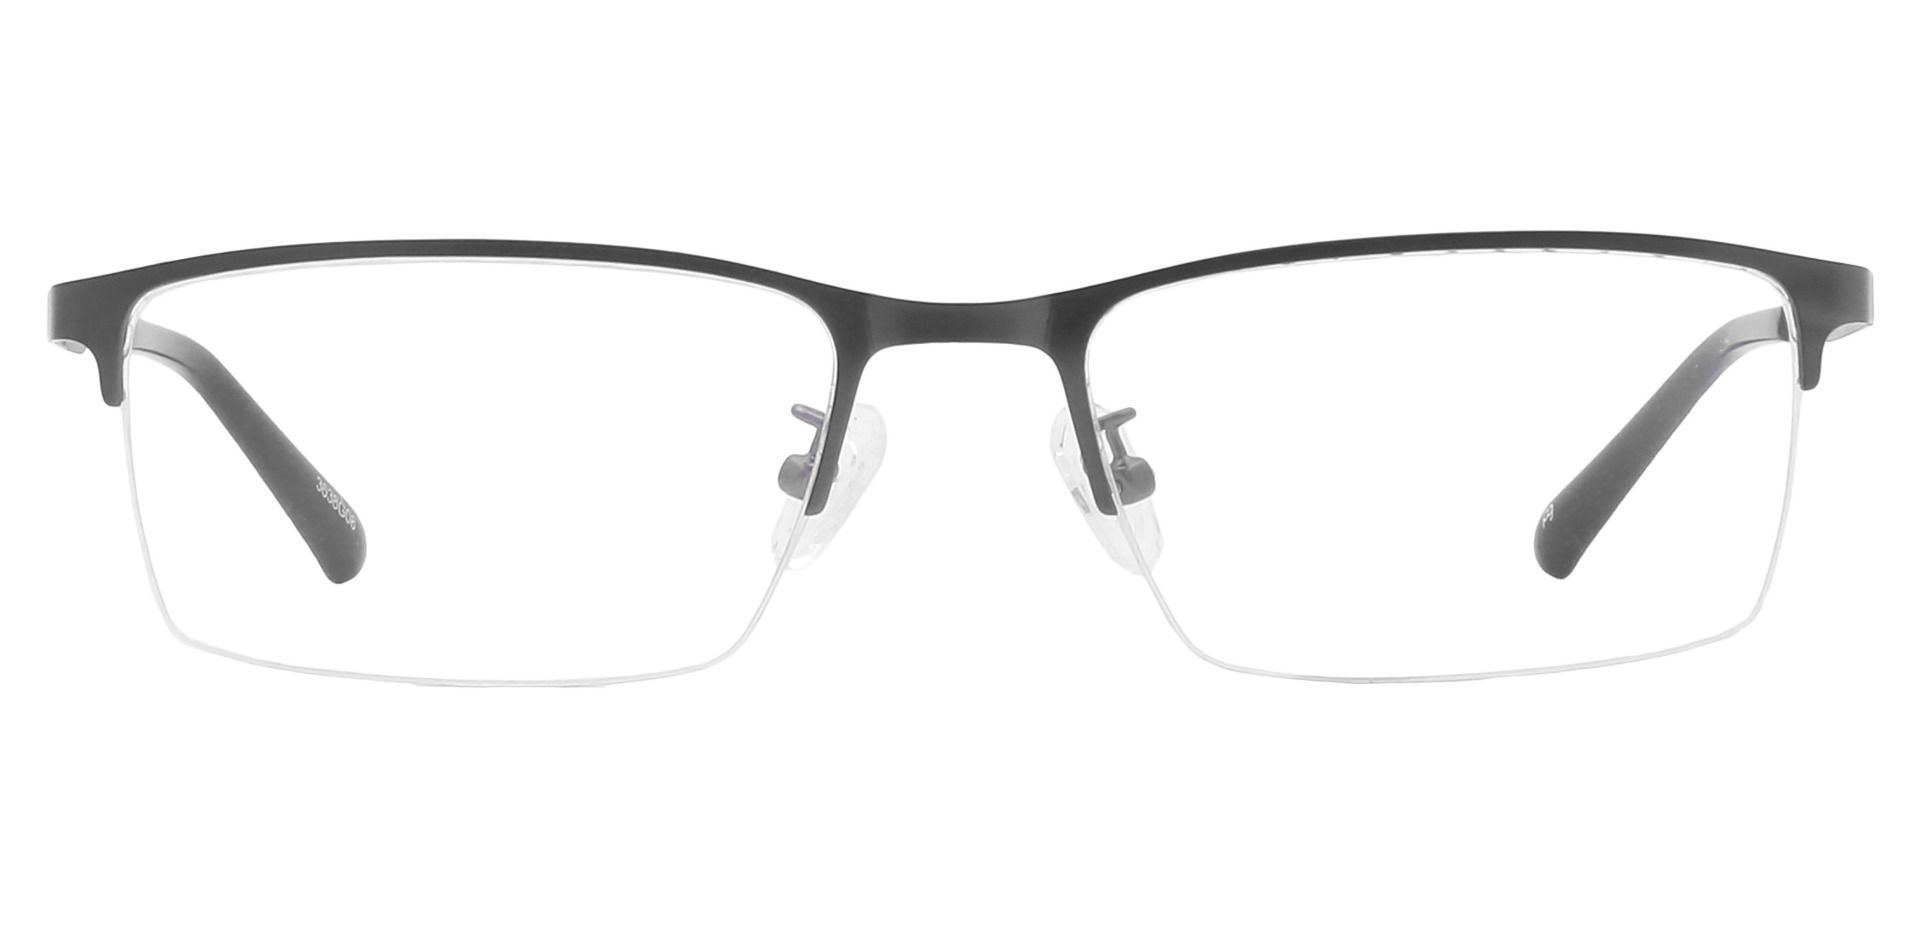 Rue Rectangle Progressive Glasses - Gray